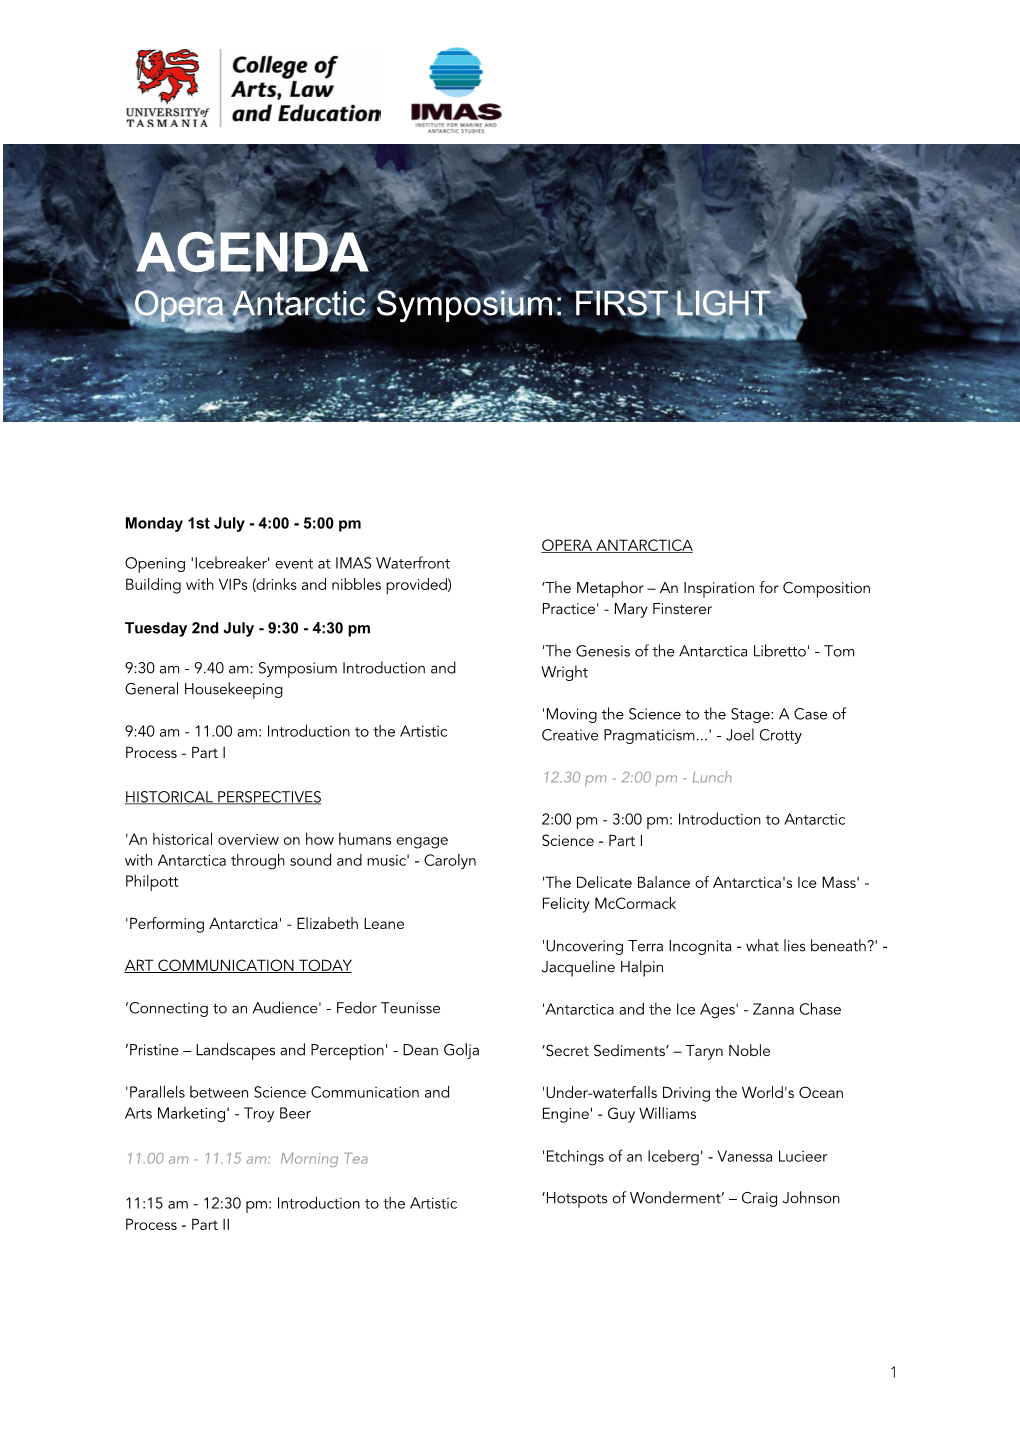 AGENDA Opera Antarctic Symposium: FIRST LIGHT